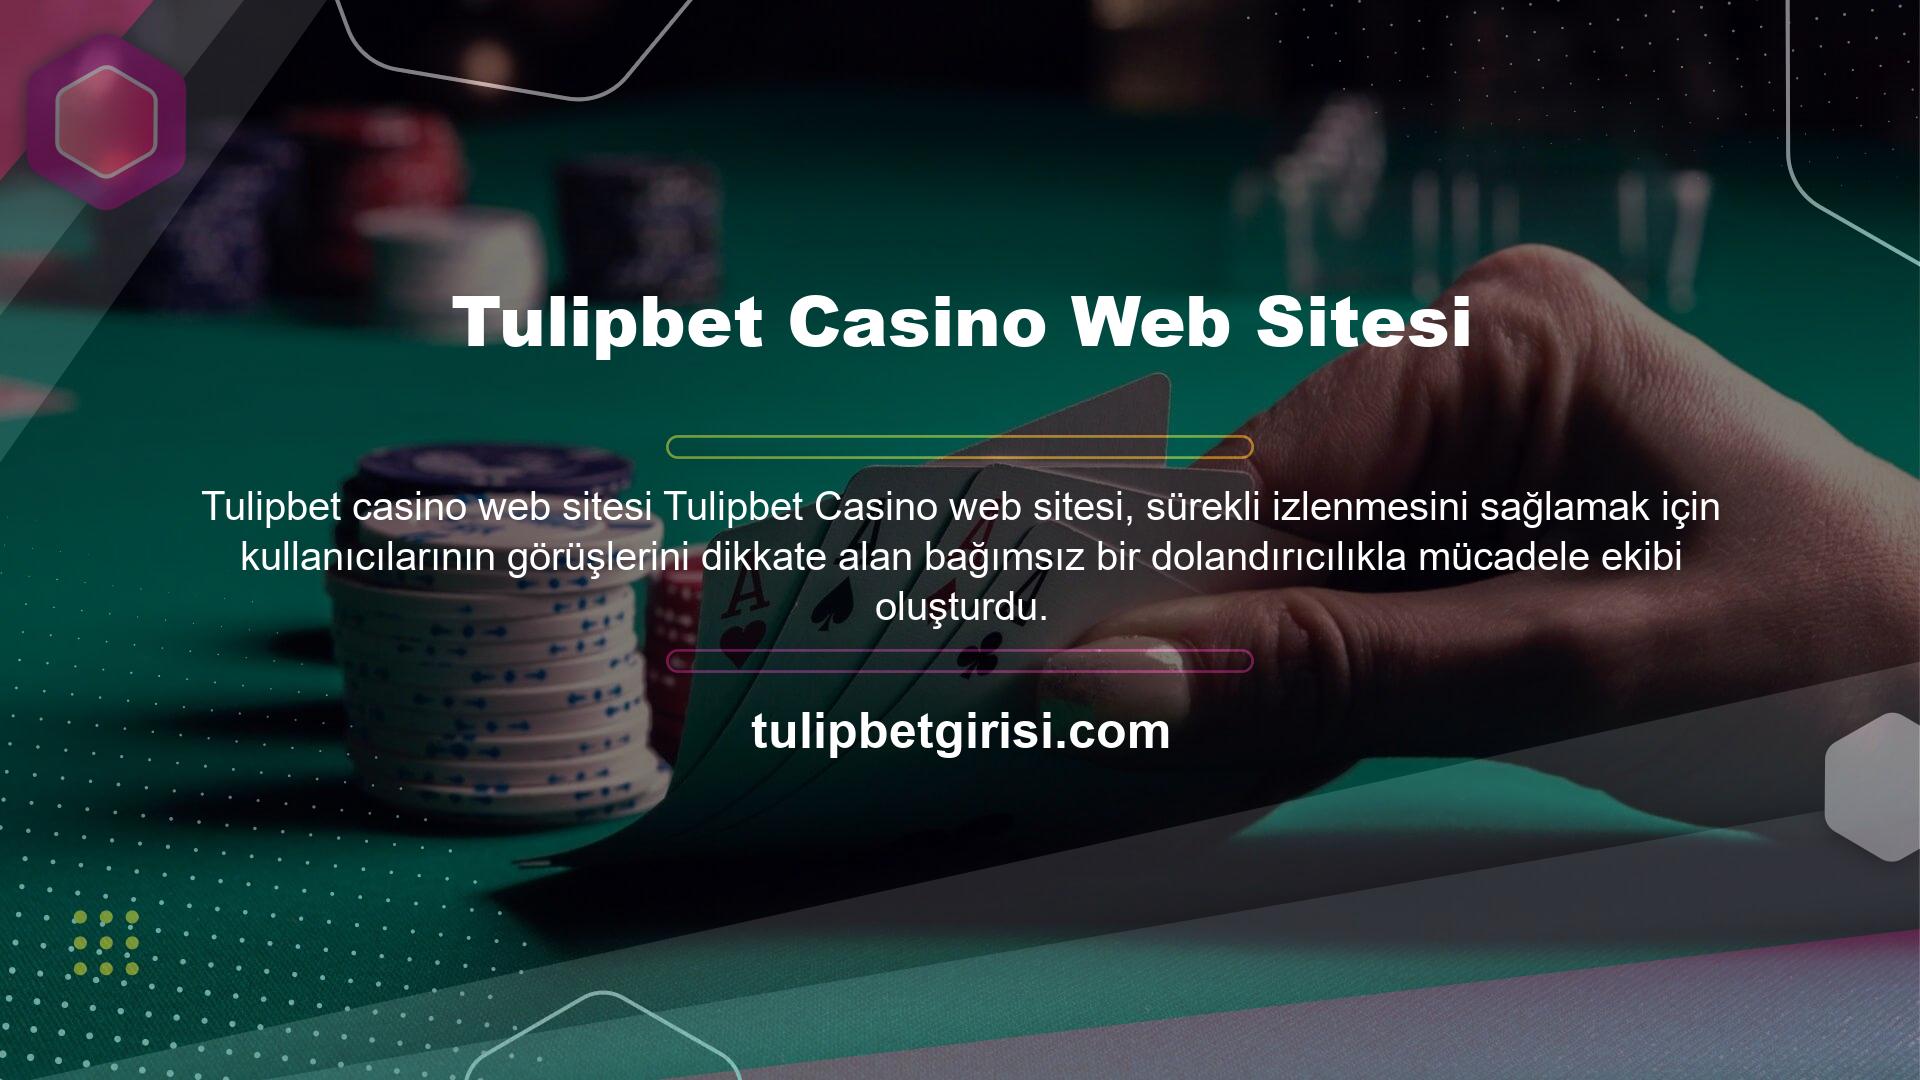 Sağlanan bilgilerle tek tıklamayla güvenli casino ve bahis oyunları oynayabilirsiniz! Çevrimiçi versiyonun tüm avantajlarını sağlayan Tulipbet Mobile ile canlı bahis her zaman ve her yerde mümkündür